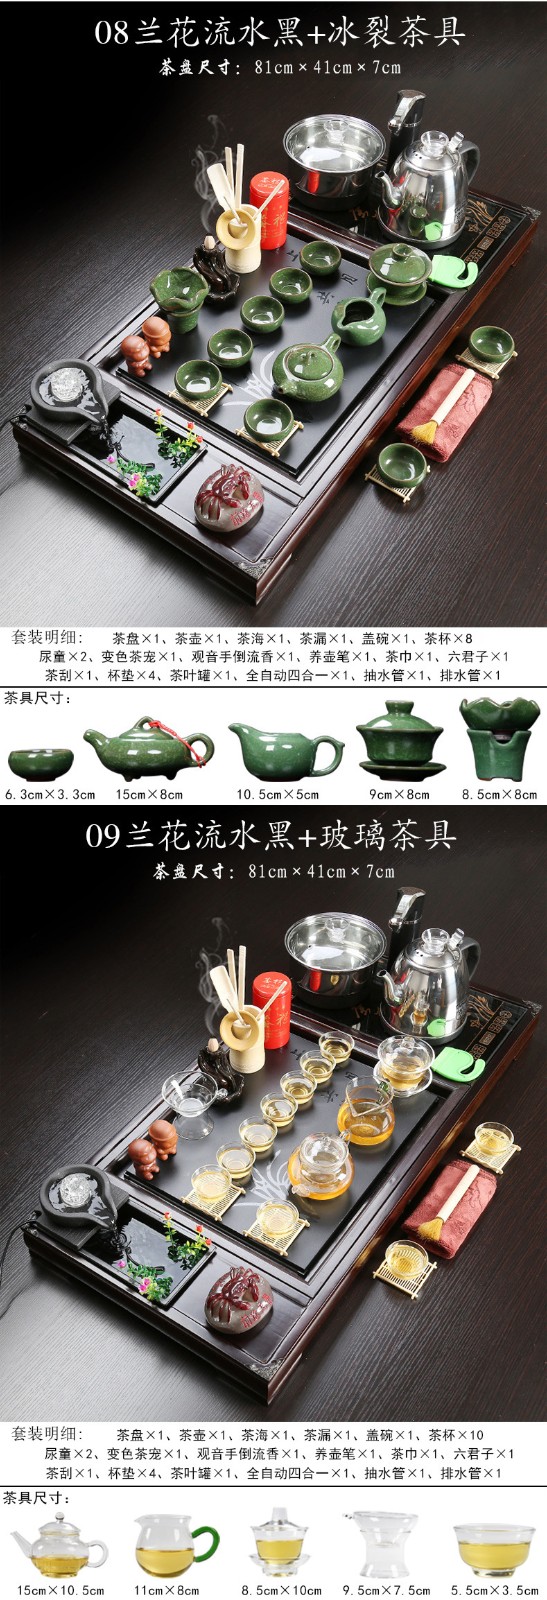 实木茶盘茶具套装兰花流水黑色茶盘+冰裂茶具+黑色全自动电器